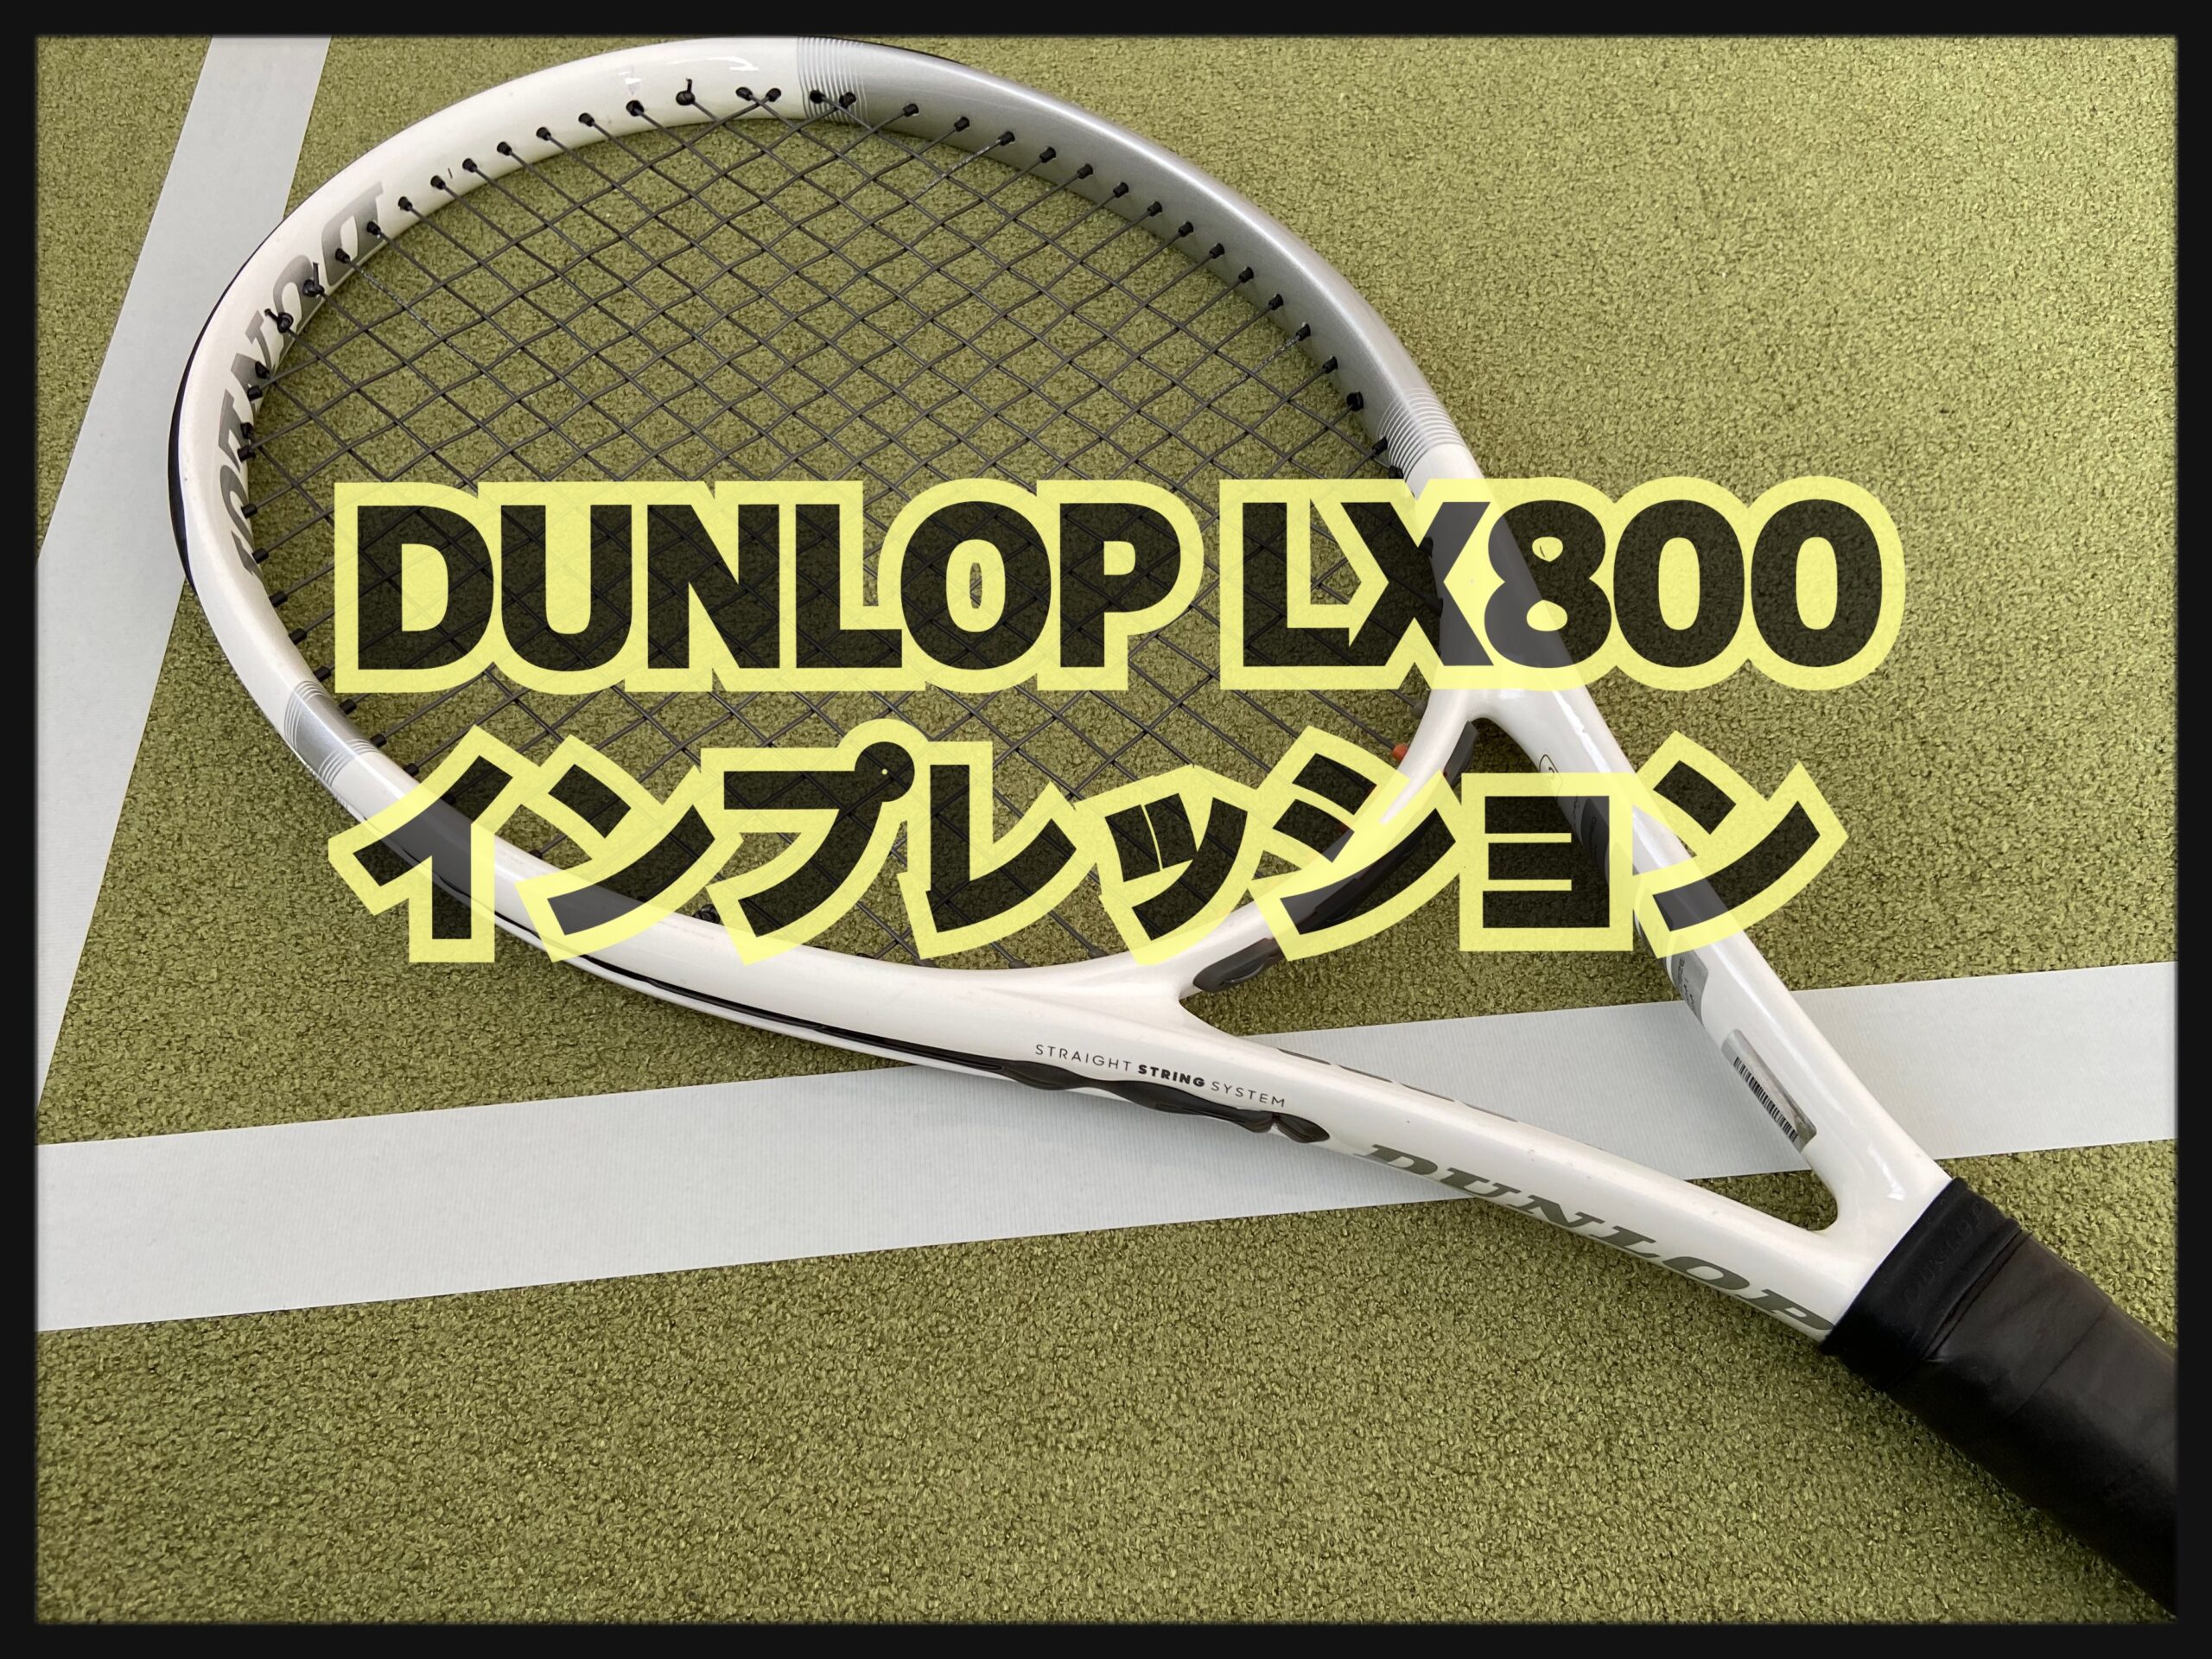 DUNLOP 】 LX800 2021 インプレッション ( 商品説明・レビュー )